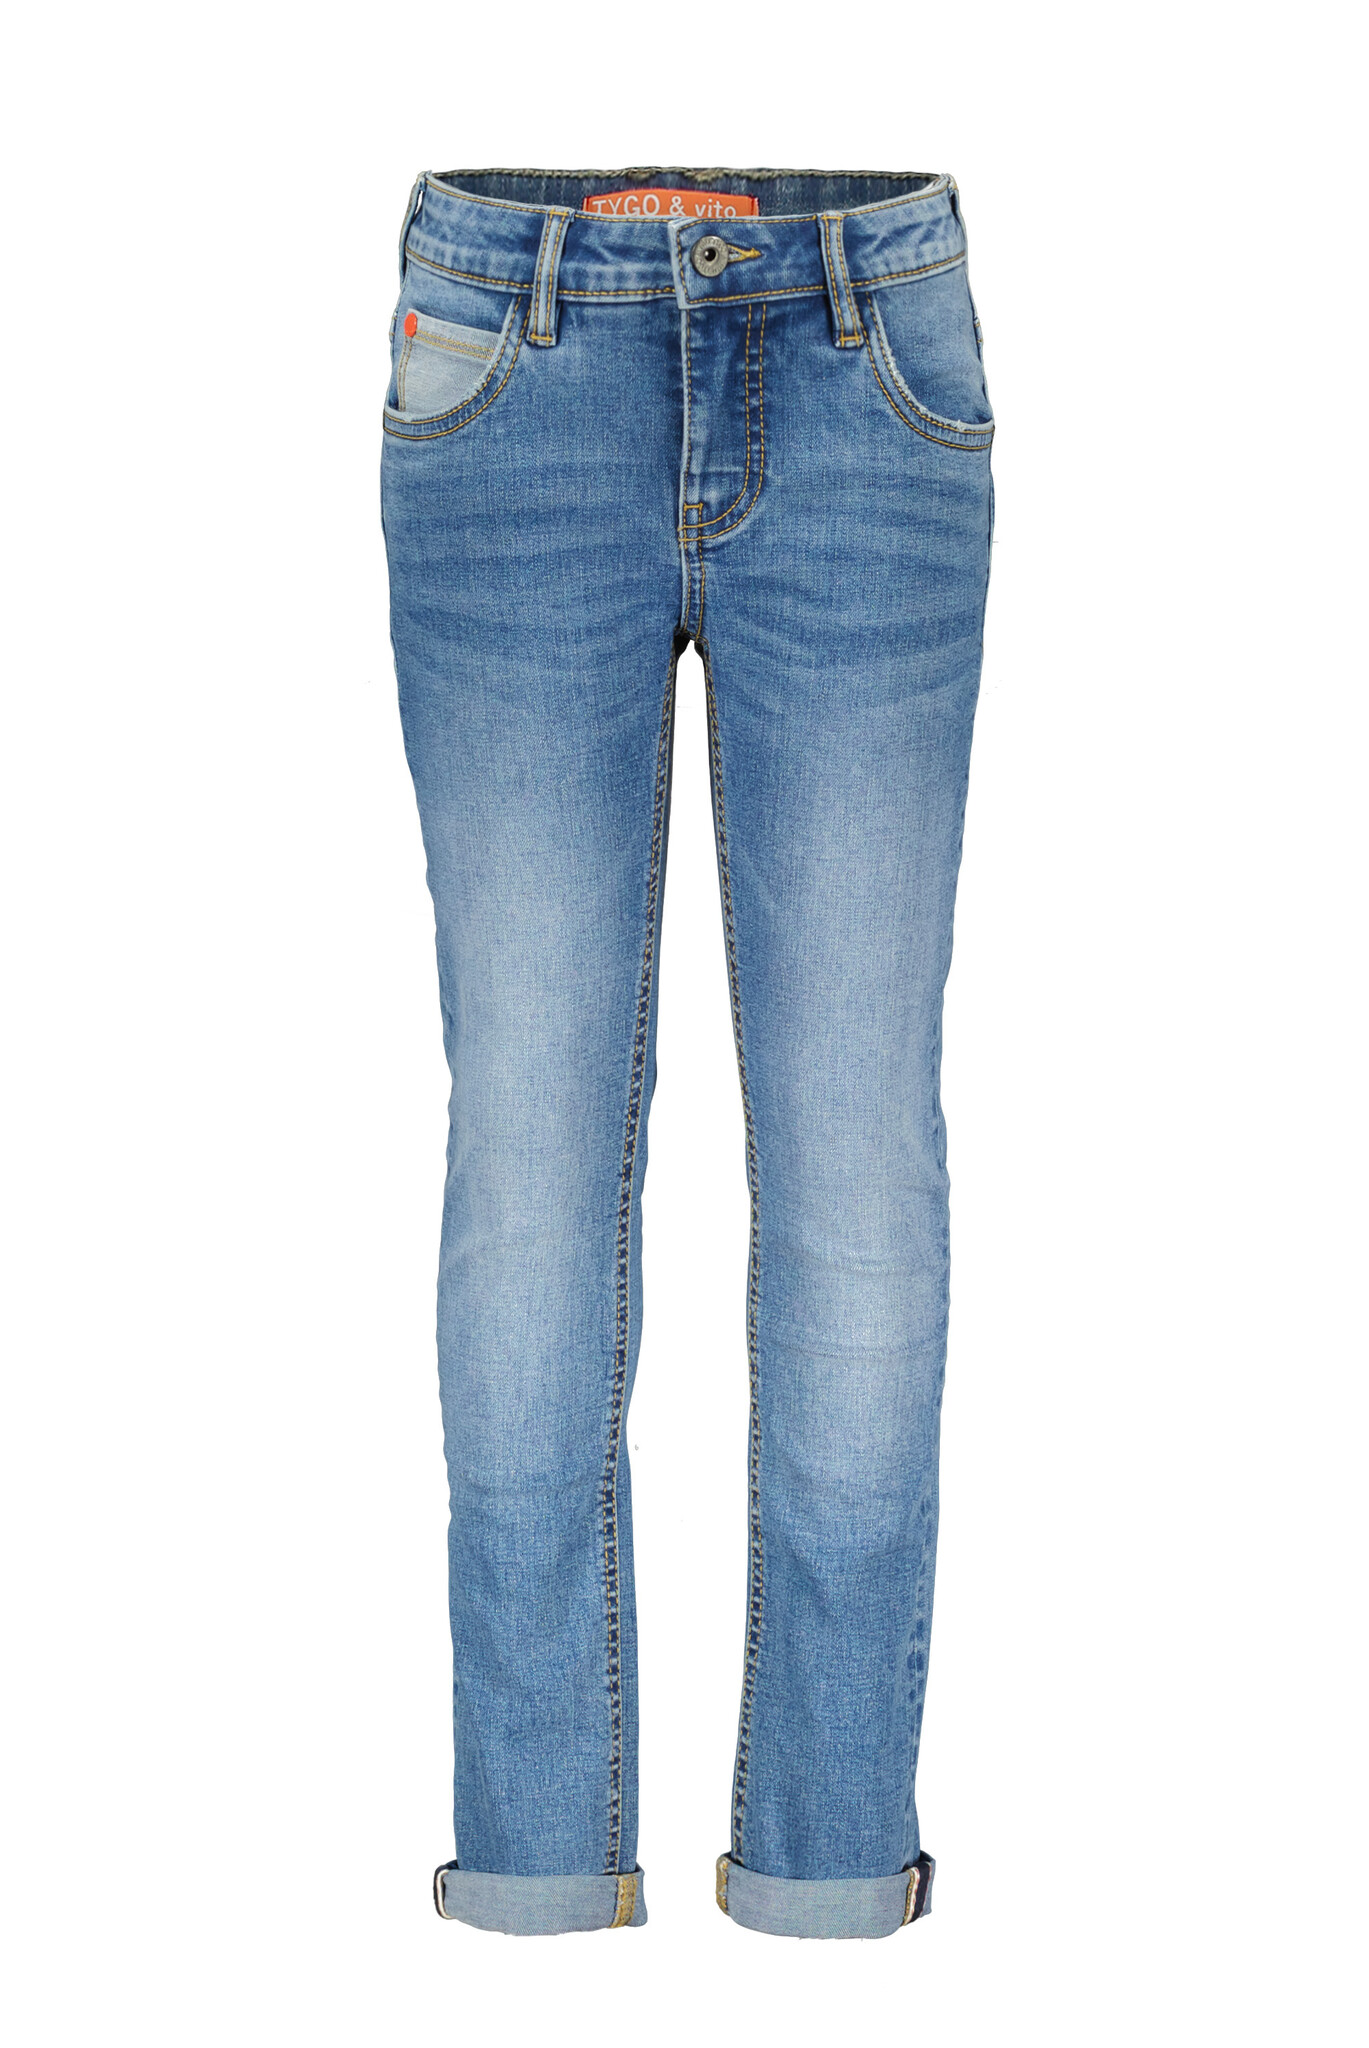 Jongens jeans broek stretch skinny fit - Pat - Medium used